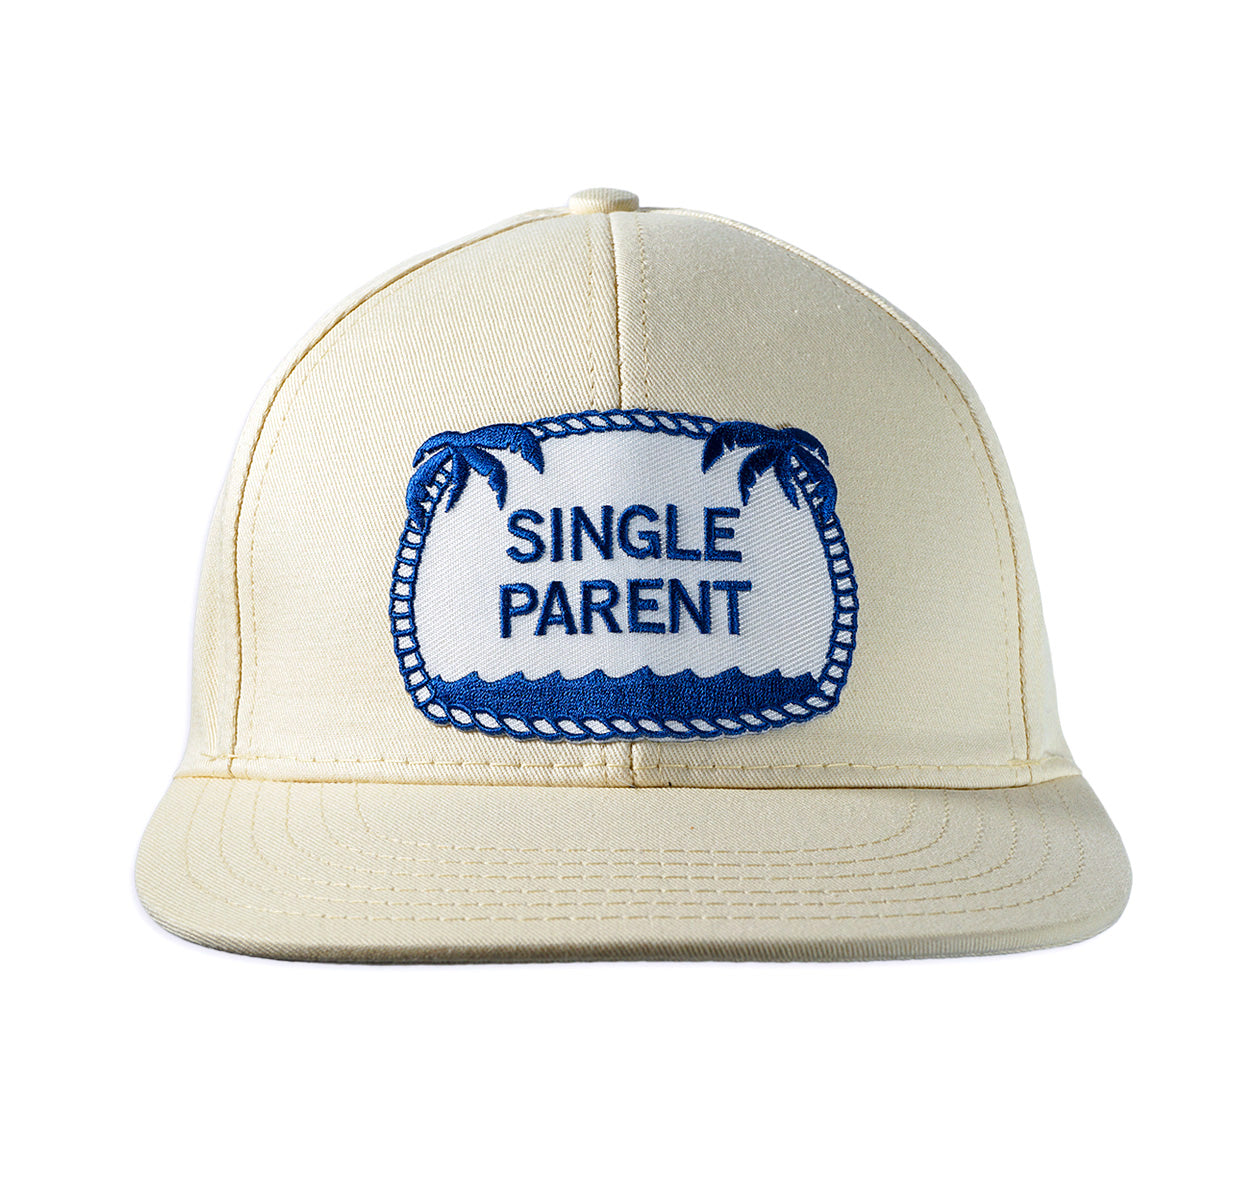 Single Parent ball cap